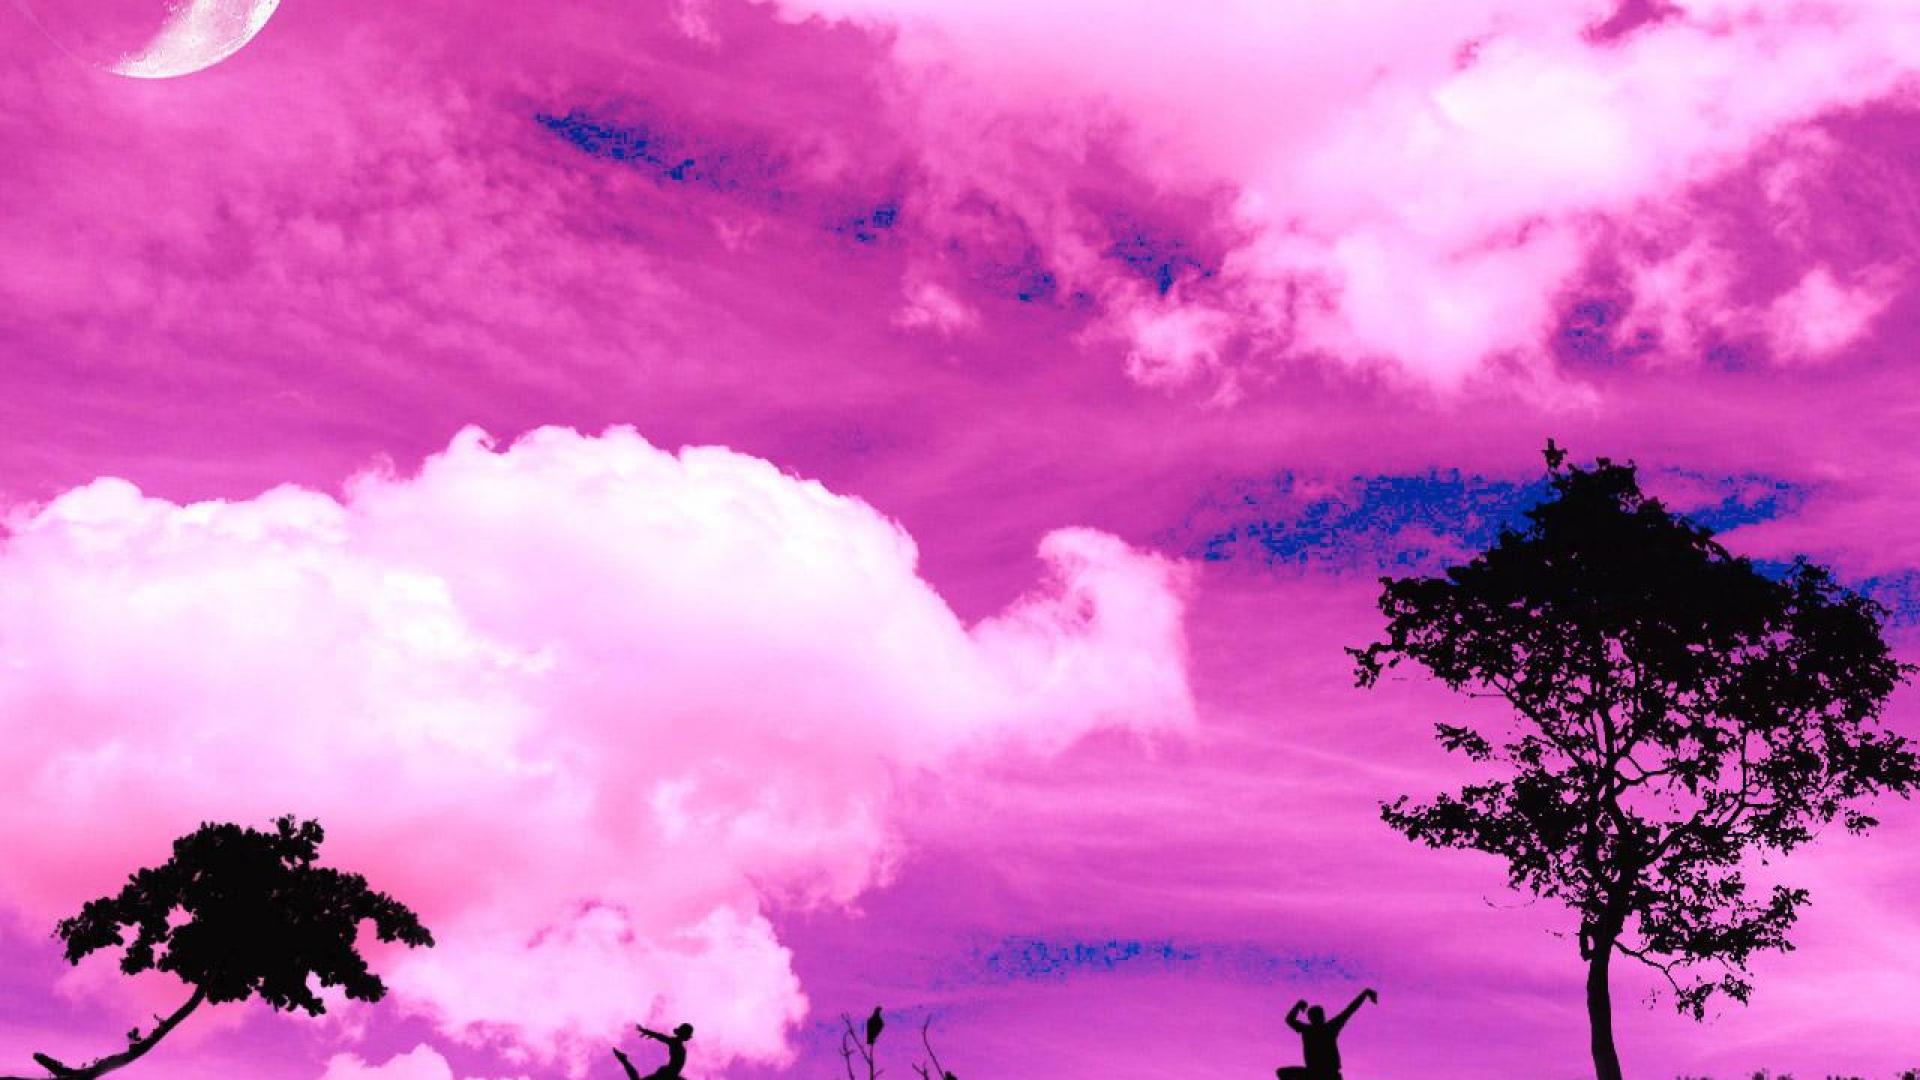 Pink Color Desktop Backgrounds - Wallpaper, High Definition, High